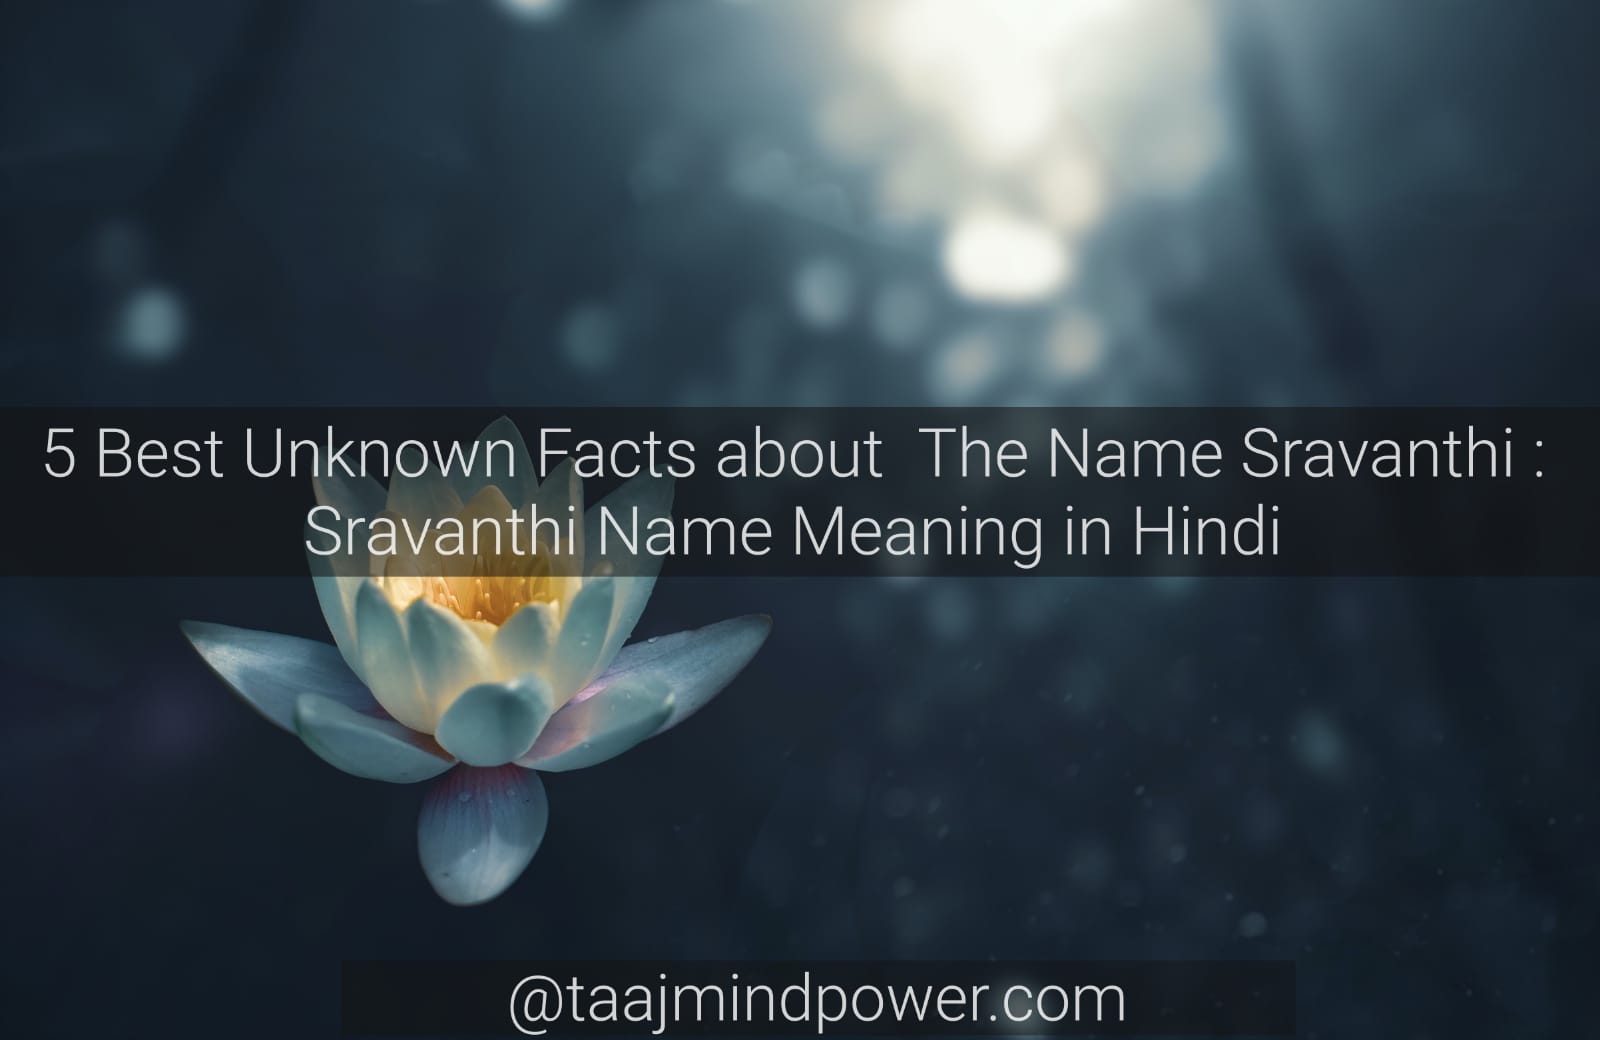 Sravanthi Name Meaning in Hindi